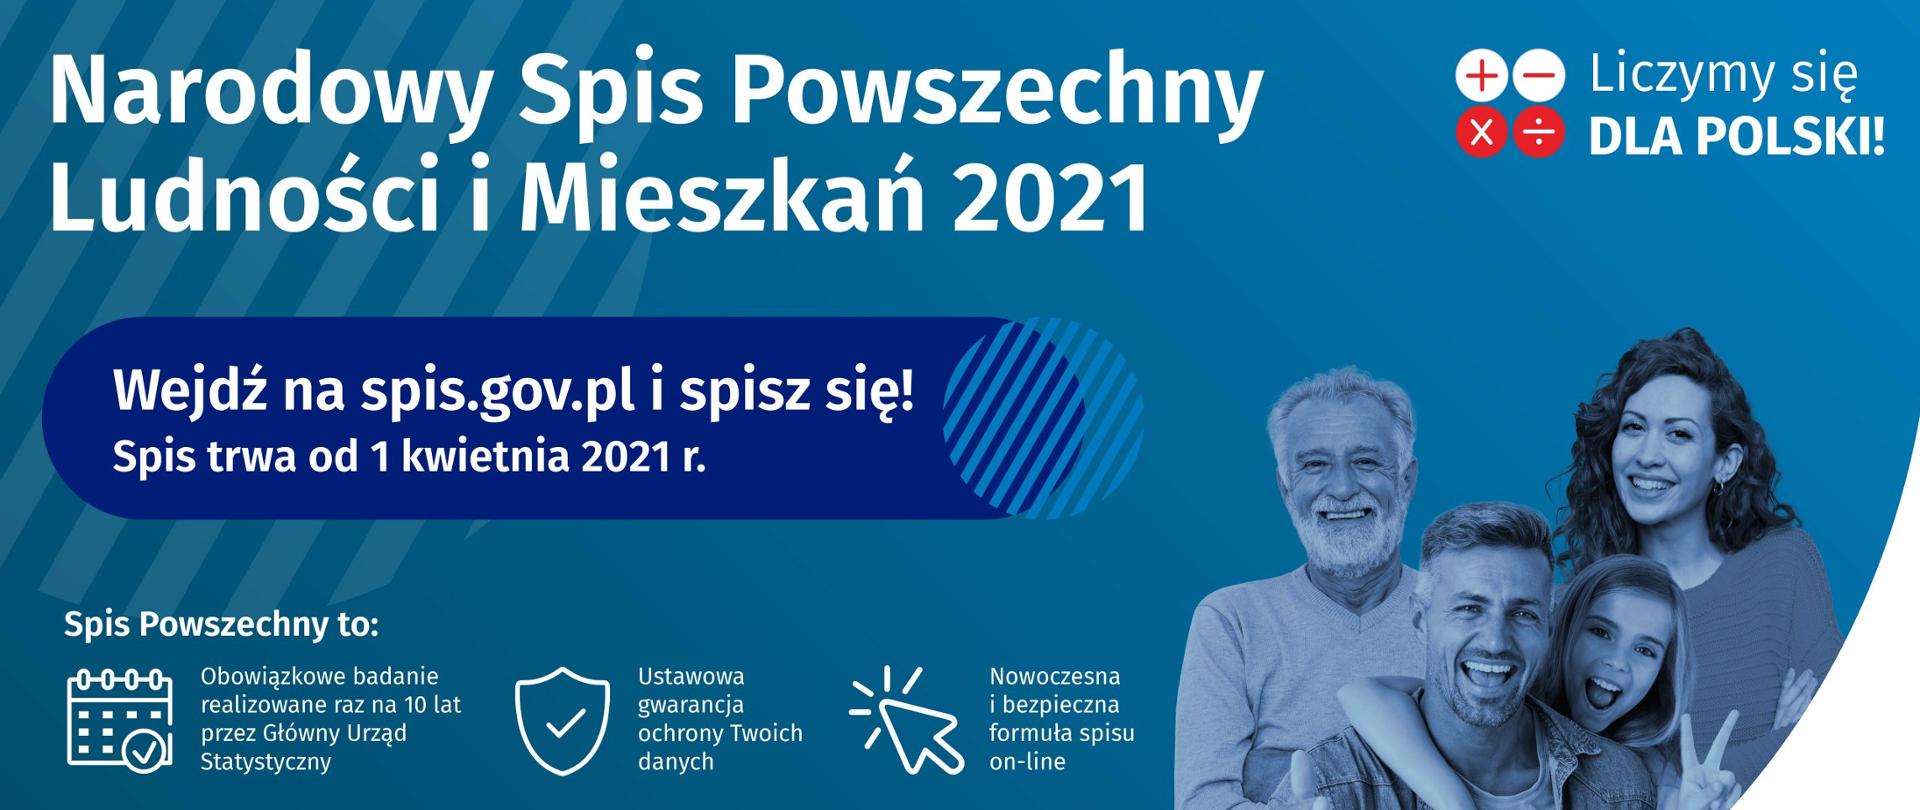 Na niebieskim tle: w lewym górnym rogu napis "Narodowy Spis Powszechny Ludności i Mieszkań 2021", poniżej napis "Wejdź na spis.gov.pl i spisz się! Spis trwa od 1 kwietnia 2021 r.", poniżej informacja o spisie powszechnym; w górnym prawym rogu napis: "Liczymy się DLA POLSKI", poniżej zdjęcie ludzi przedstawiające 2 dorosłych mężczyzn, 1 dorosłą kobietę i 1 dziewczynkę.